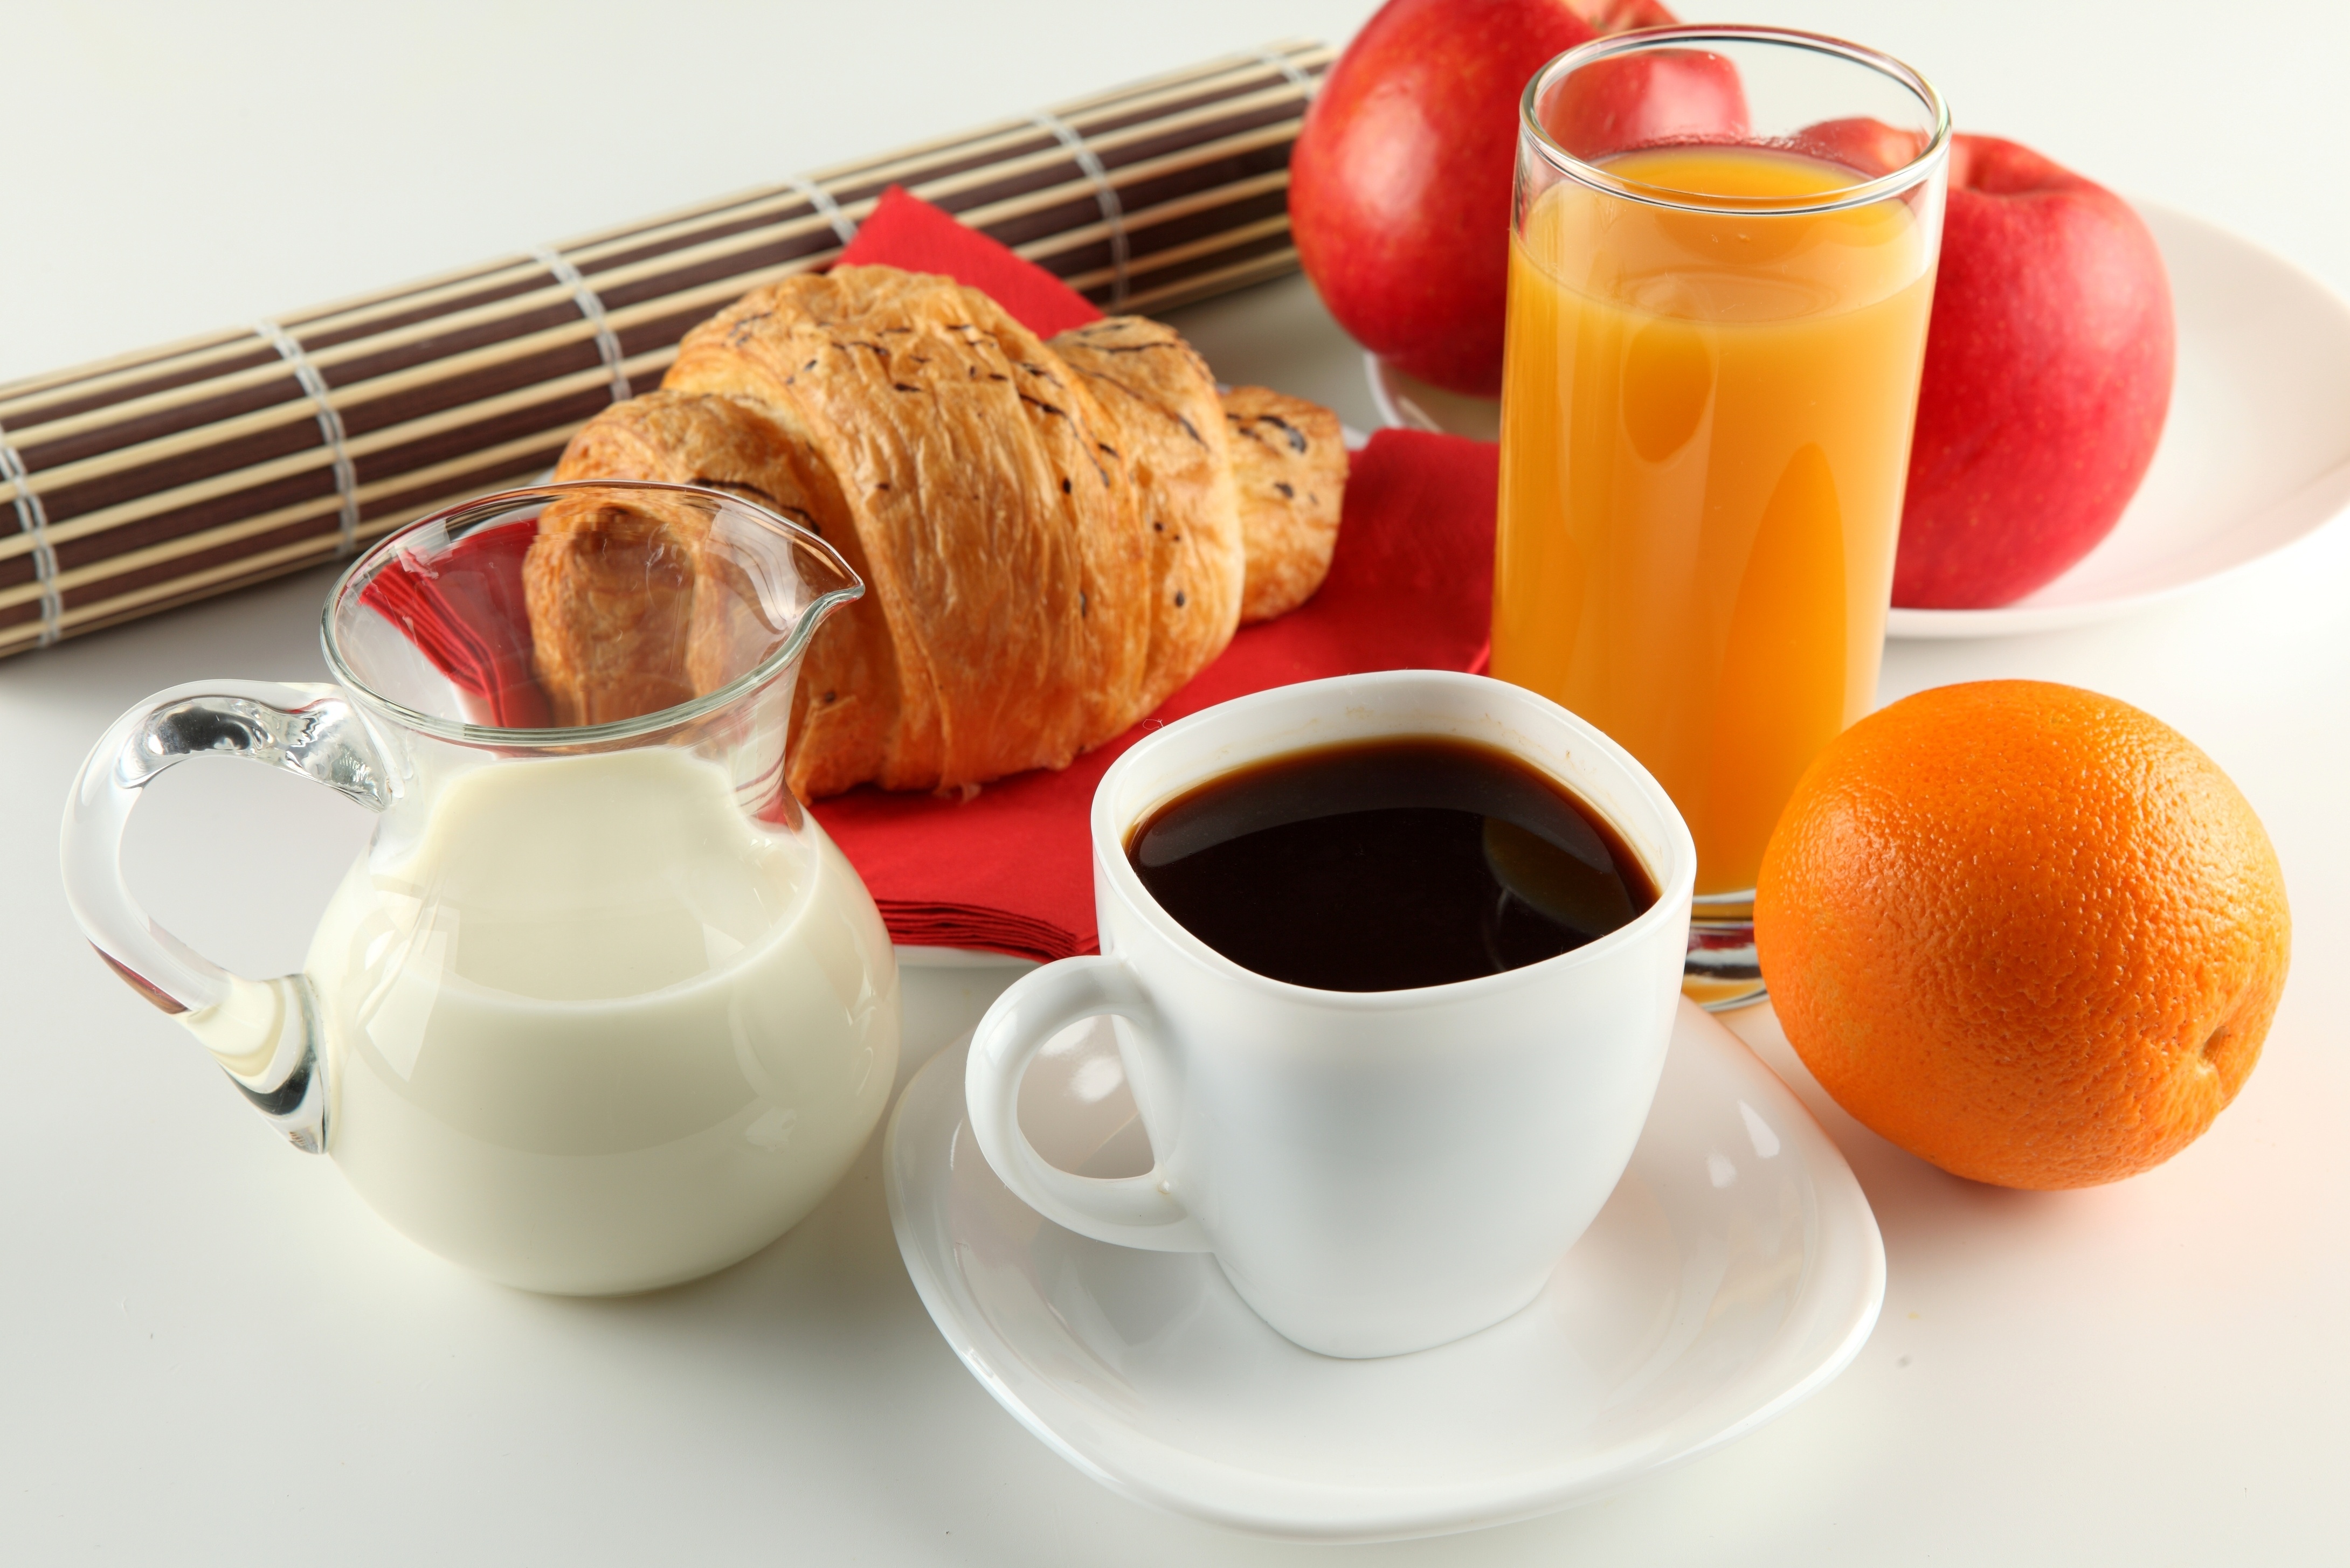 breakfast, juice, coffee, food, apple, croissant, cup, milk, still life